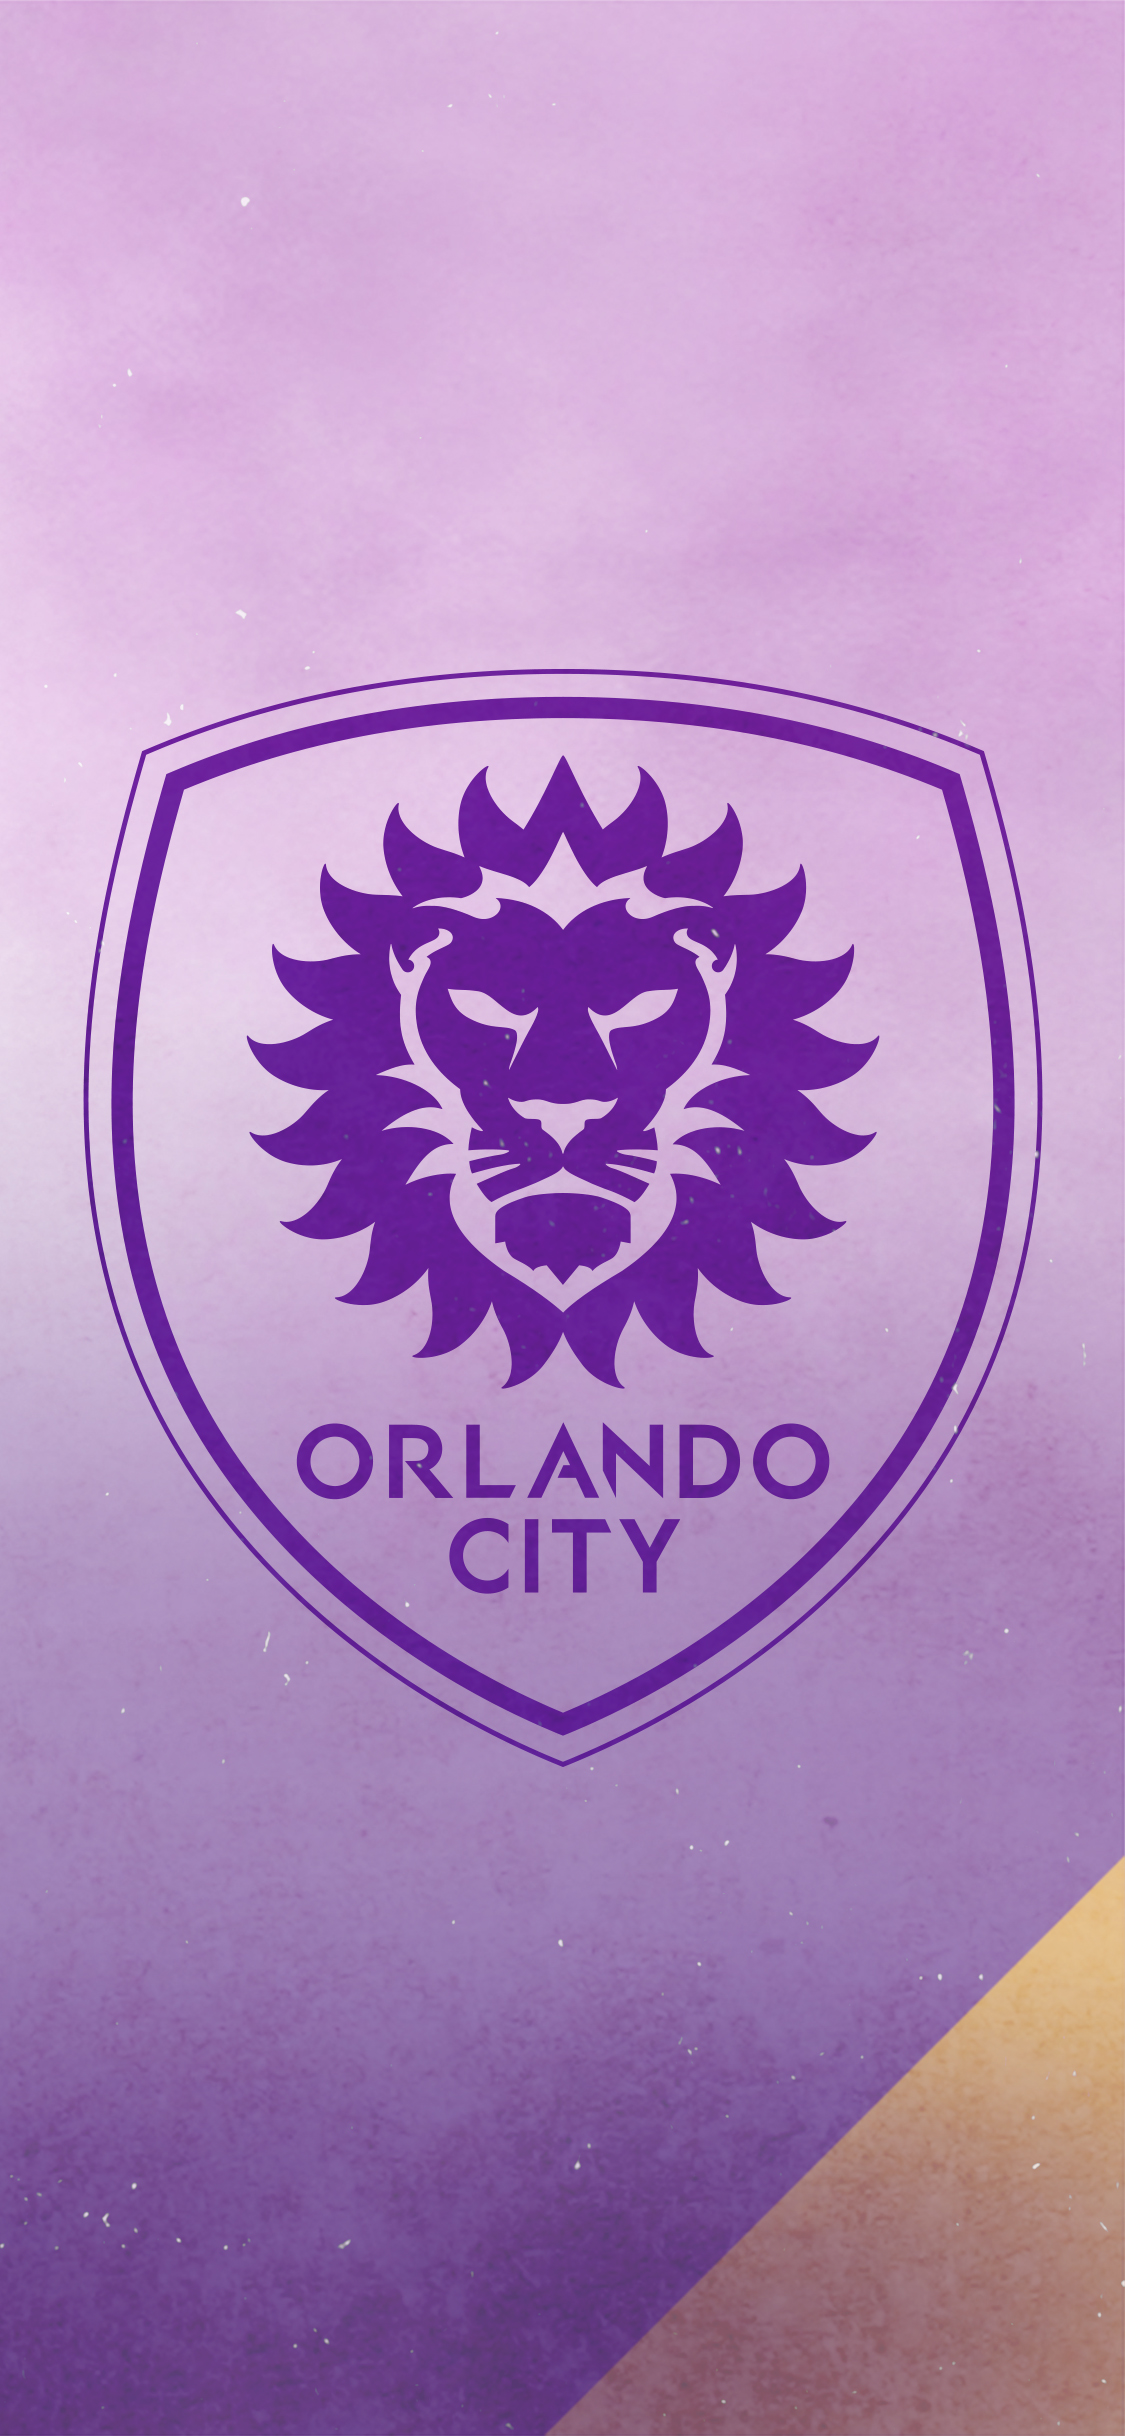 Downloads Orlando City Soccer Club